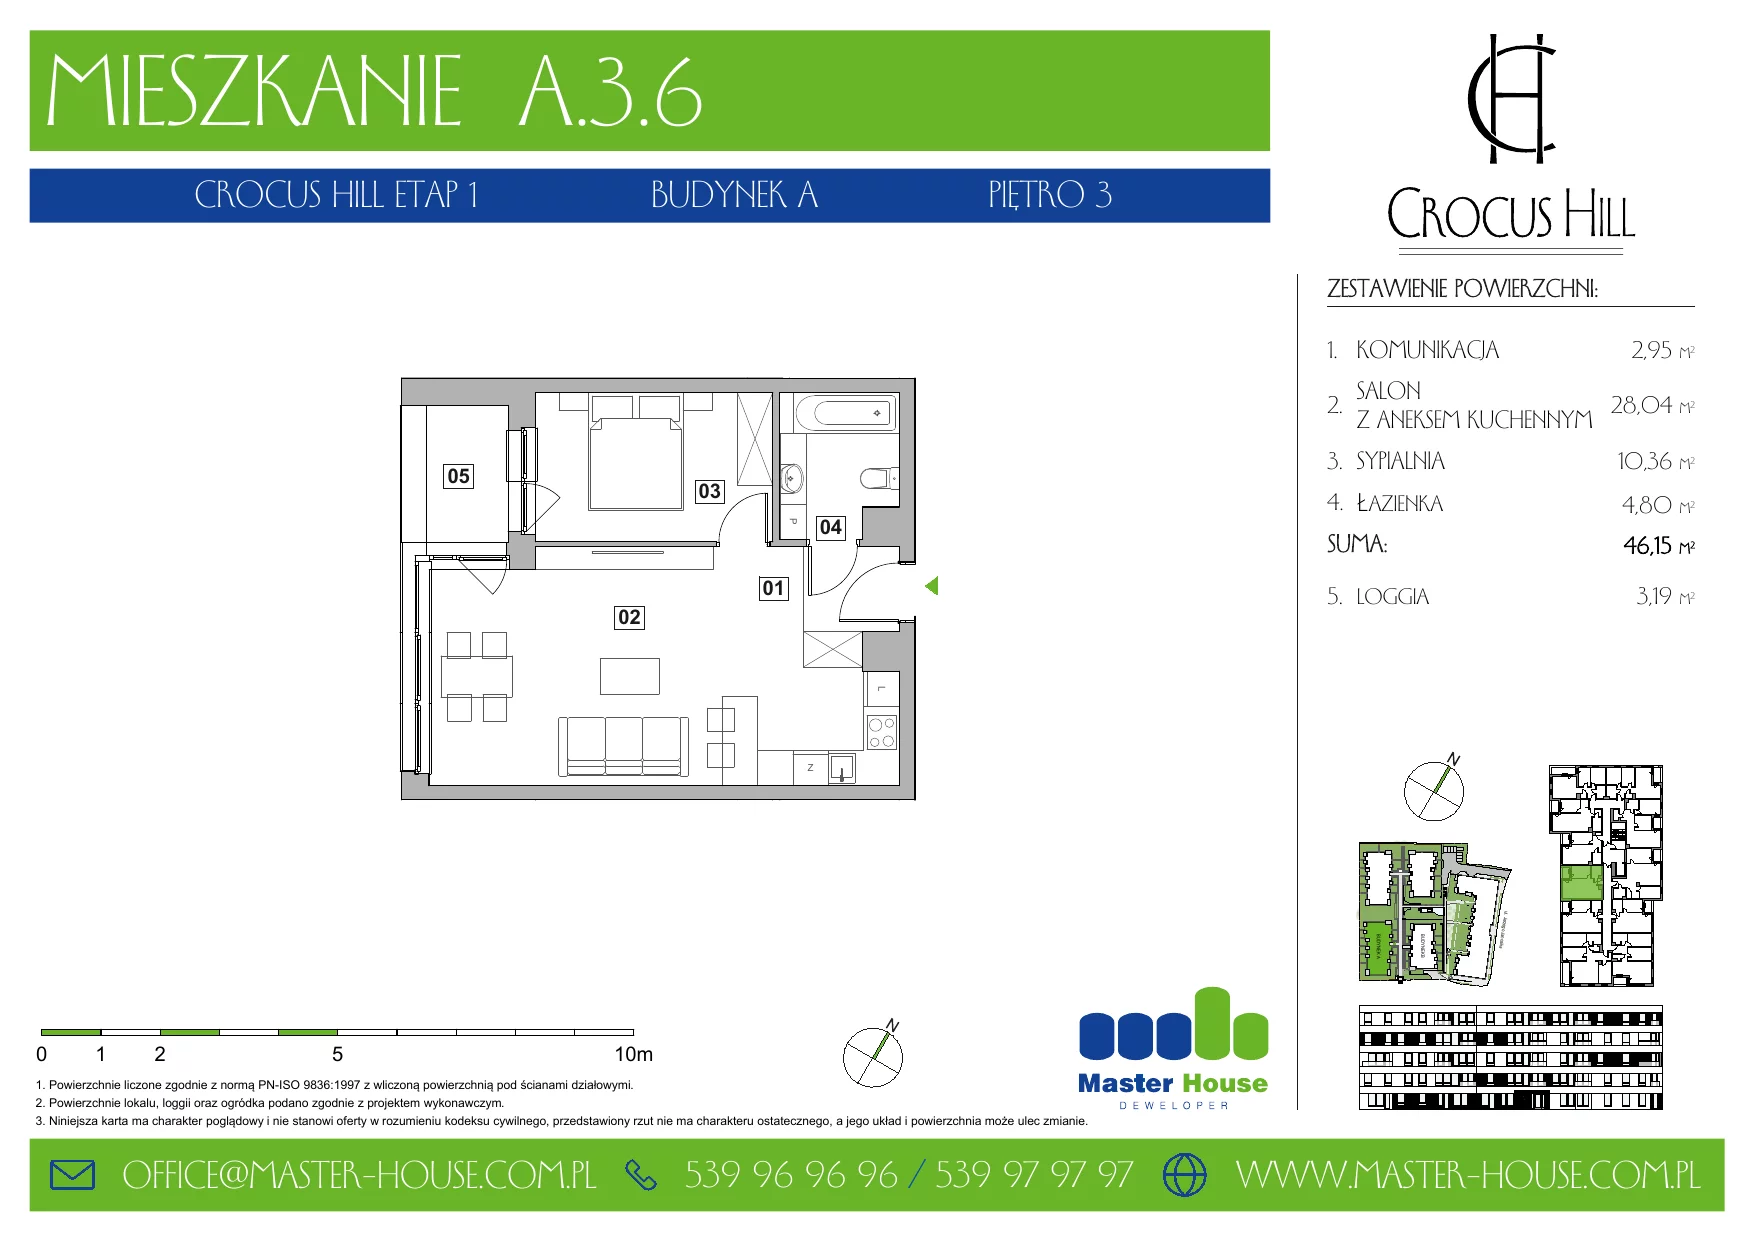 Mieszkanie 46,15 m², piętro 3, oferta nr A.3.6, Crocus Hill, Szczecin, Śródmieście, ul. Jerzego Janosika 2, 2A, 3, 3A